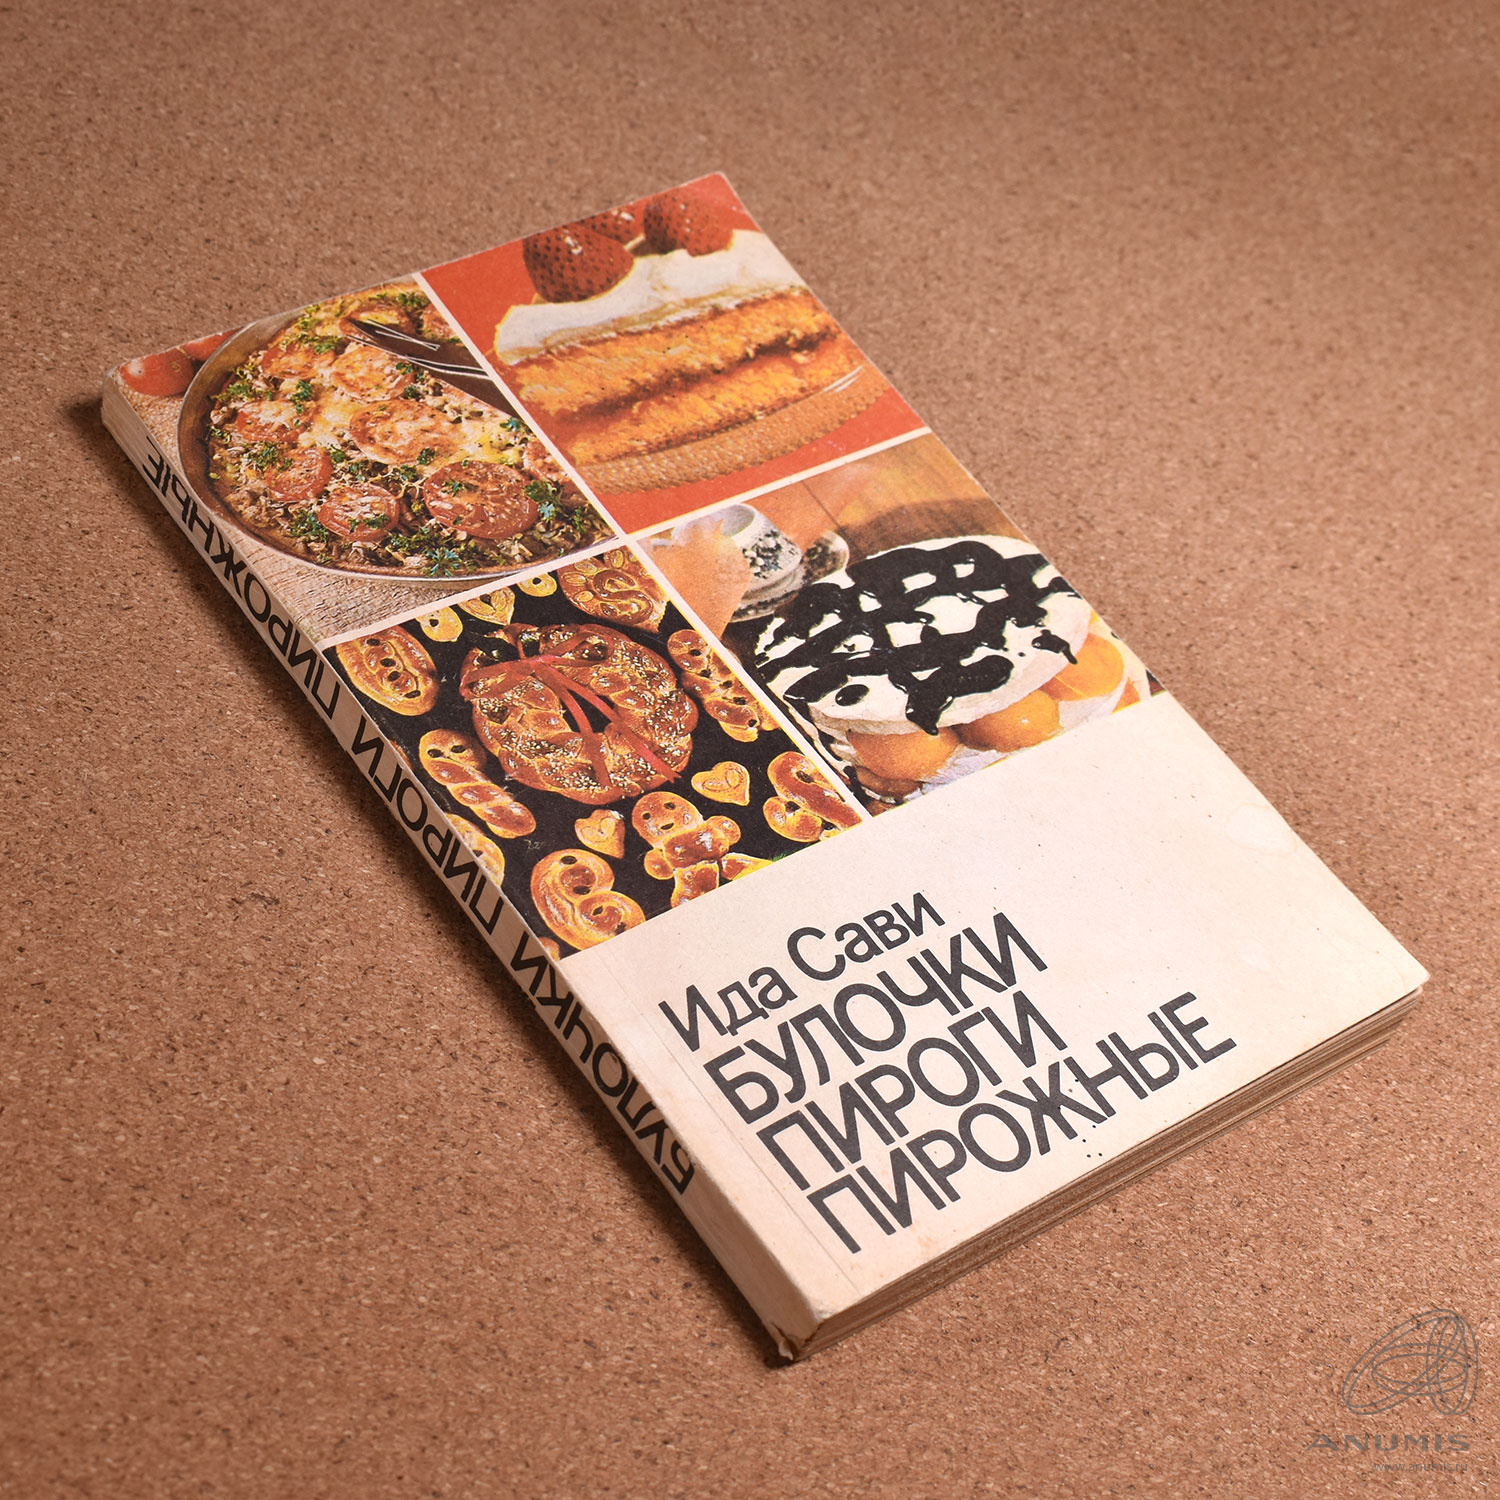 Читать книгу булочка. Булочка книжка. Книга СССР булочки, пироги, пирожные.